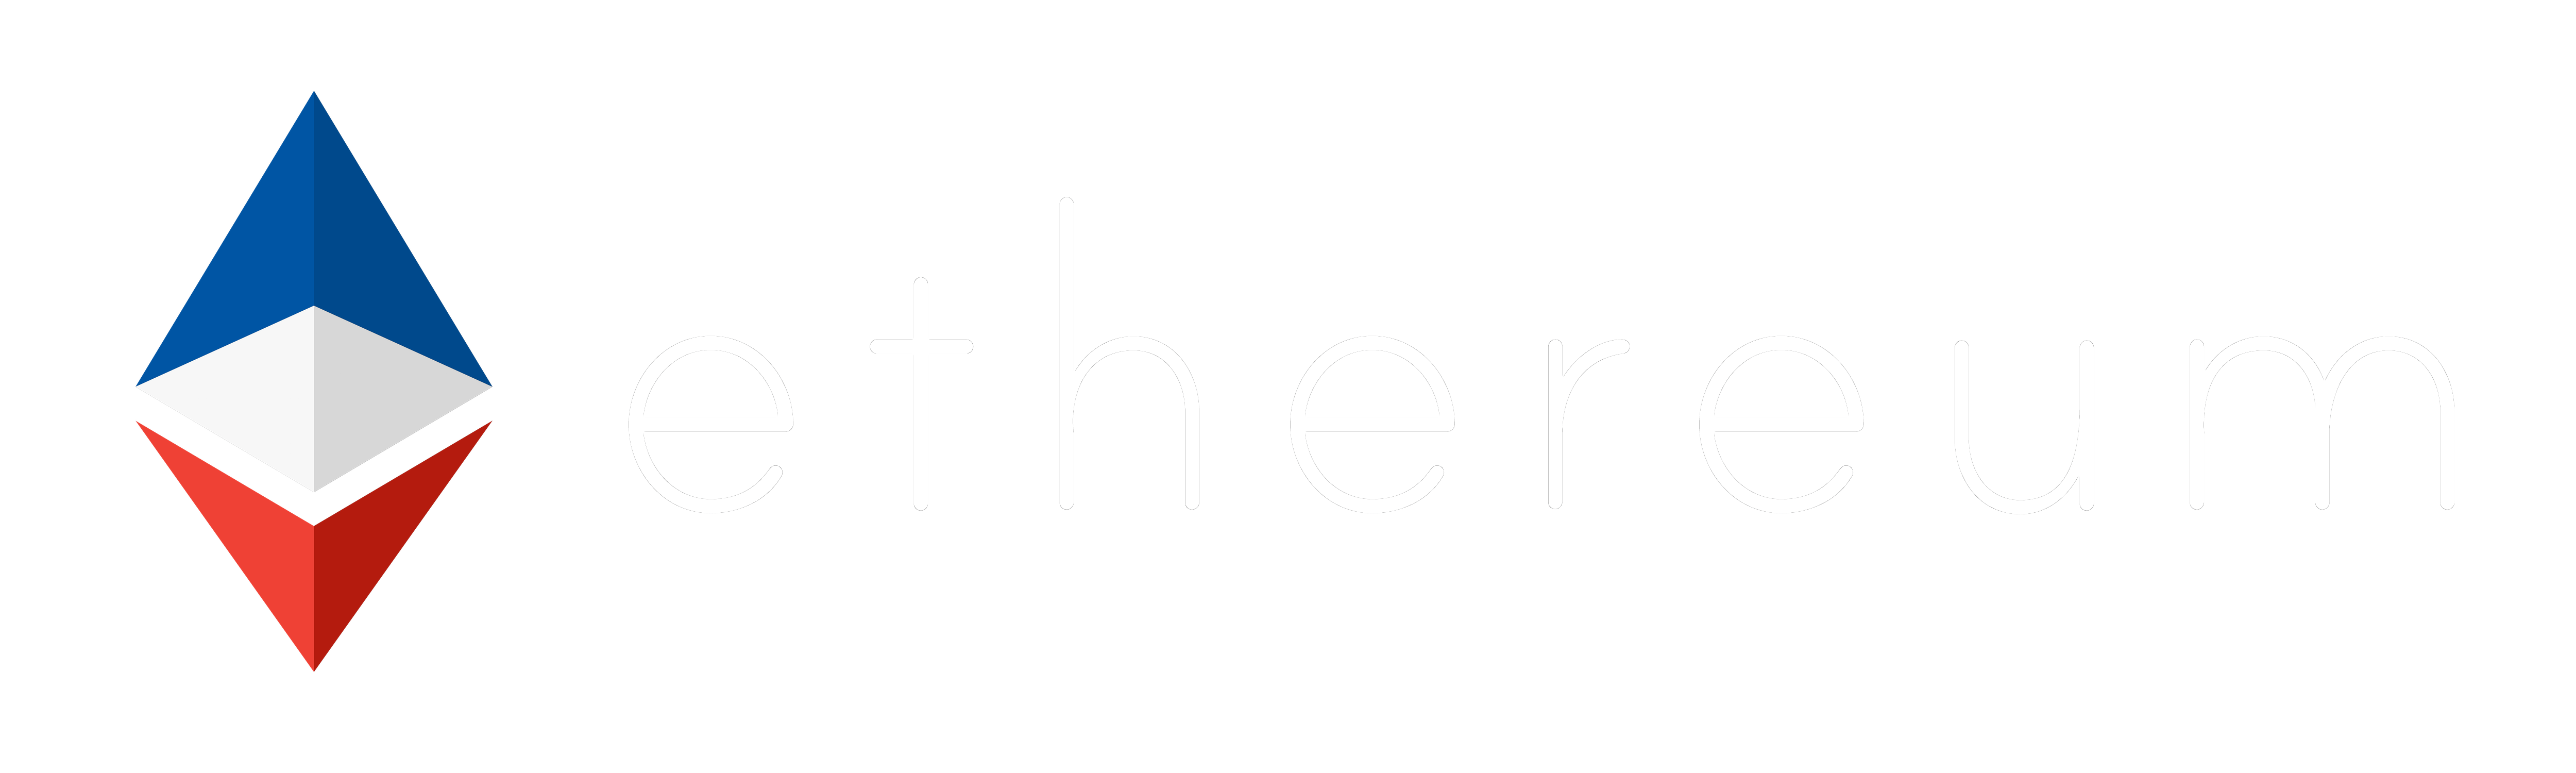 Ethereum France